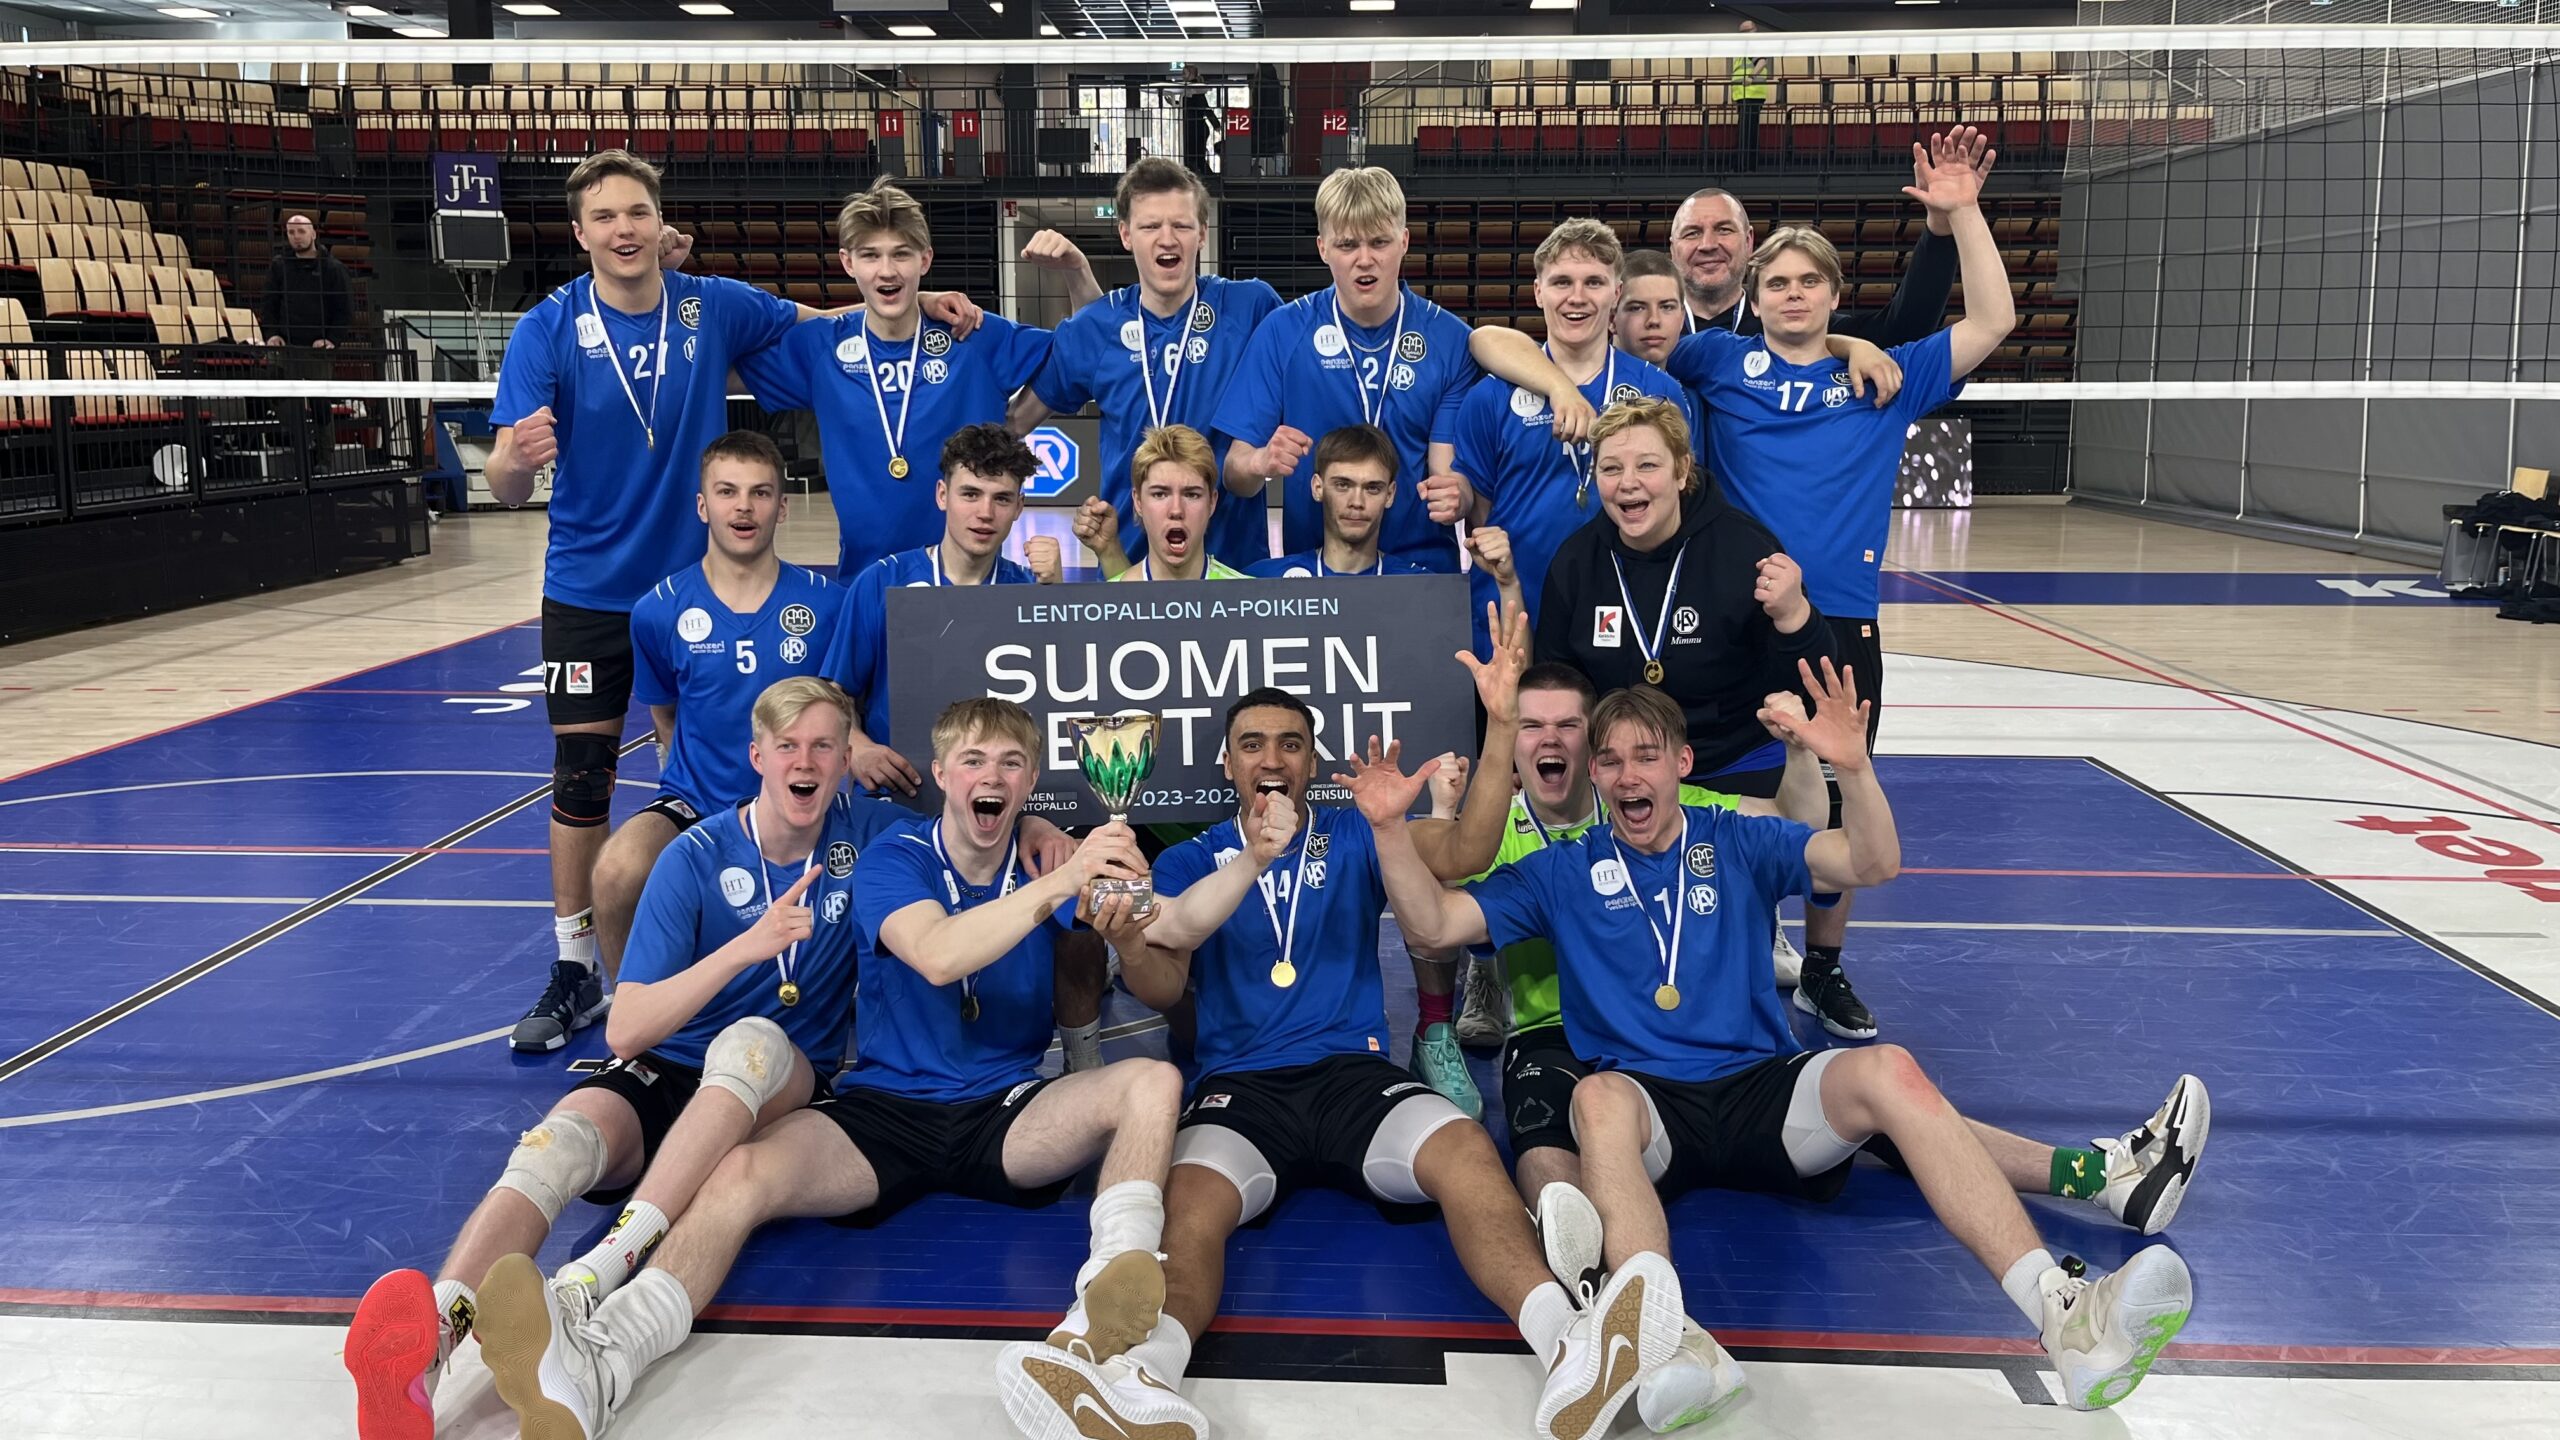 Joensuussa järjestettiin onnistunut A-poikien sm-lopputurnaus – Karkkilan pojat juhlivat suomenmestaruutta